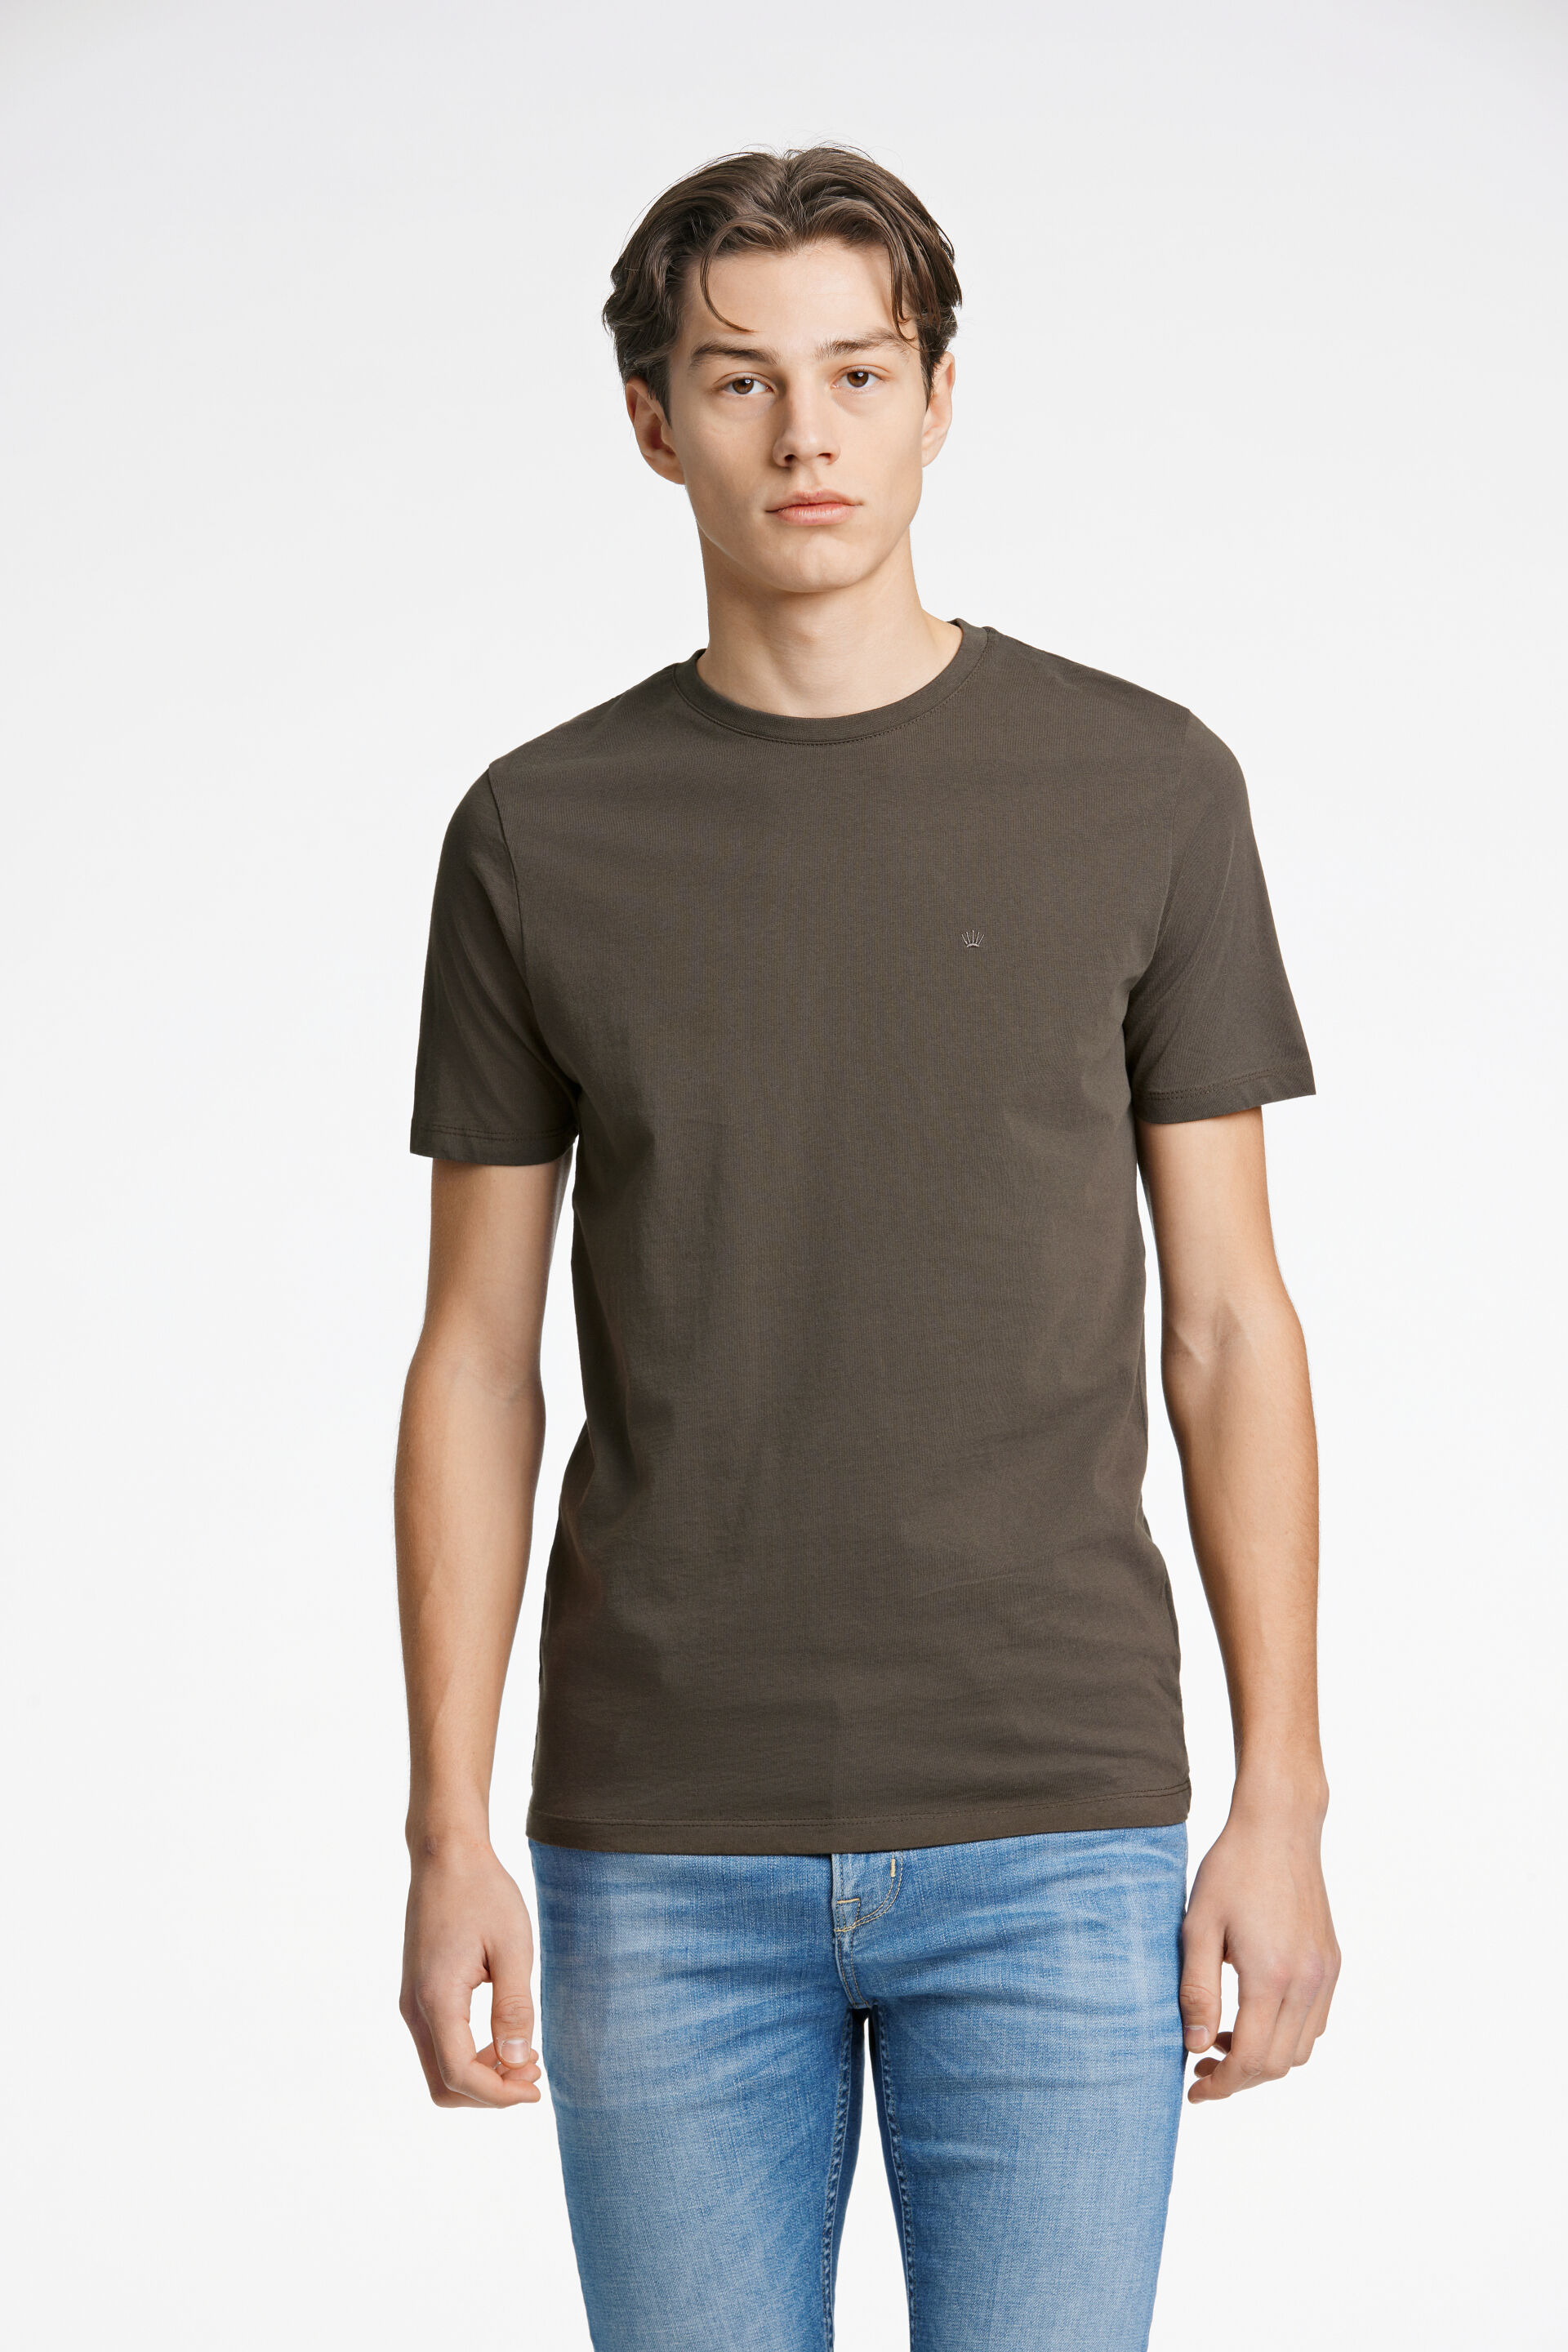 T-shirt T-shirt Grøn 60-40005